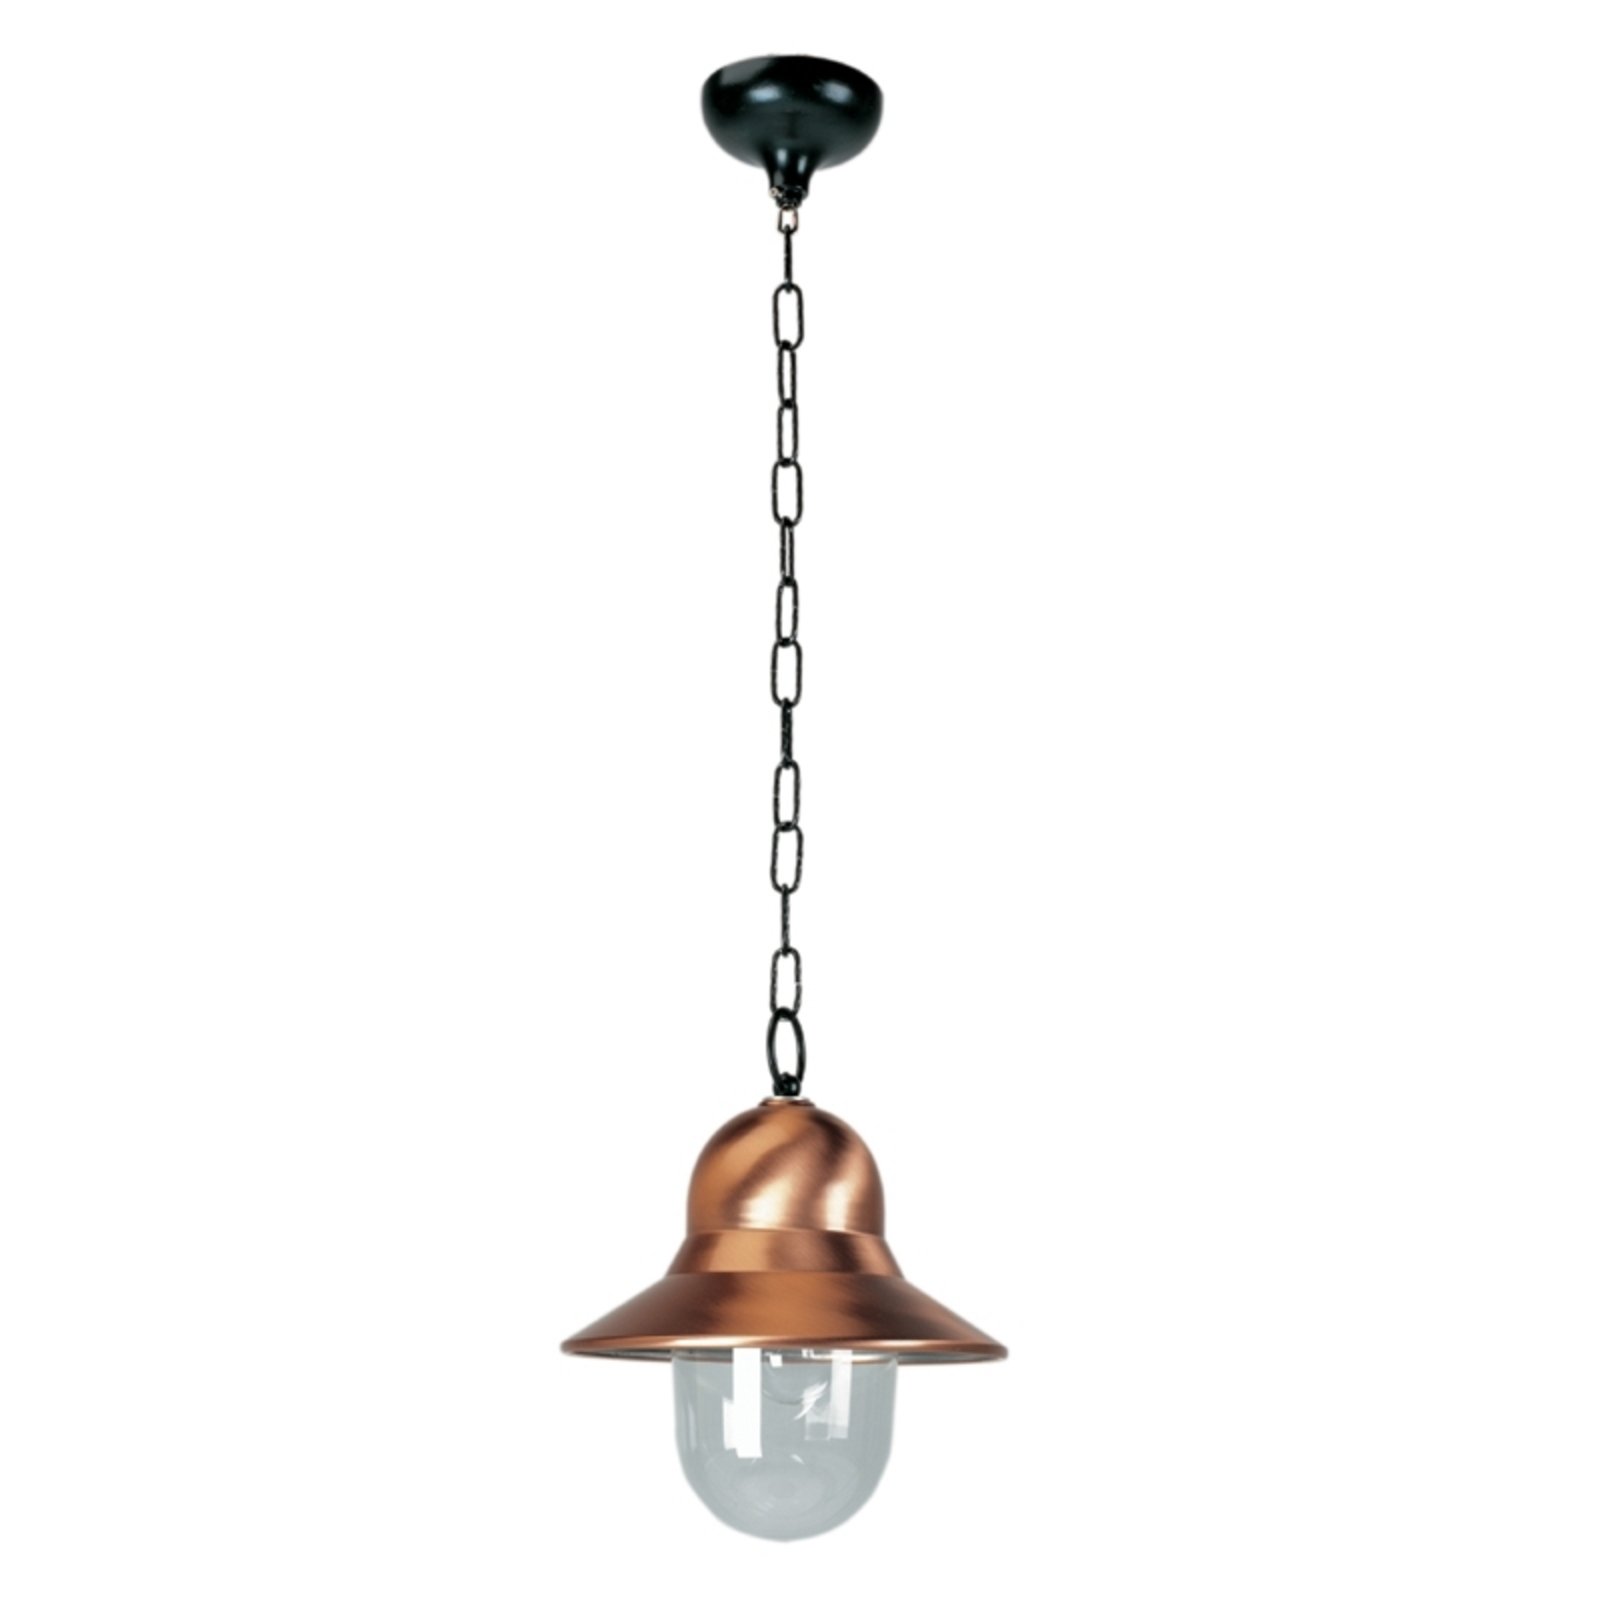 Copper-coloured outdoor hanging light Toscane, black